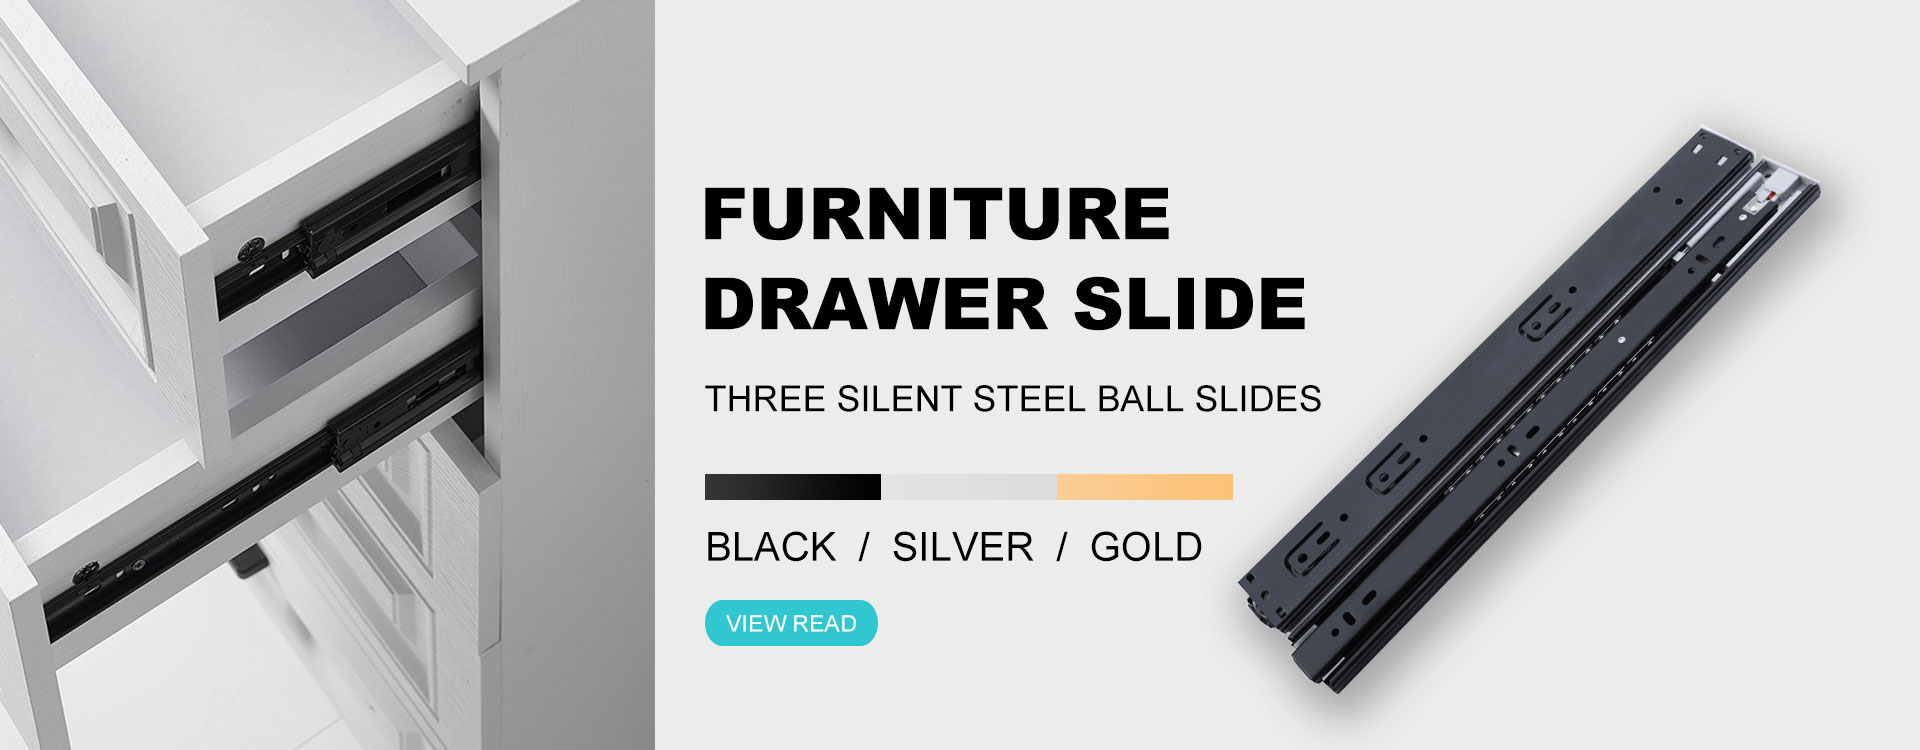 Furniture Drawer Slide